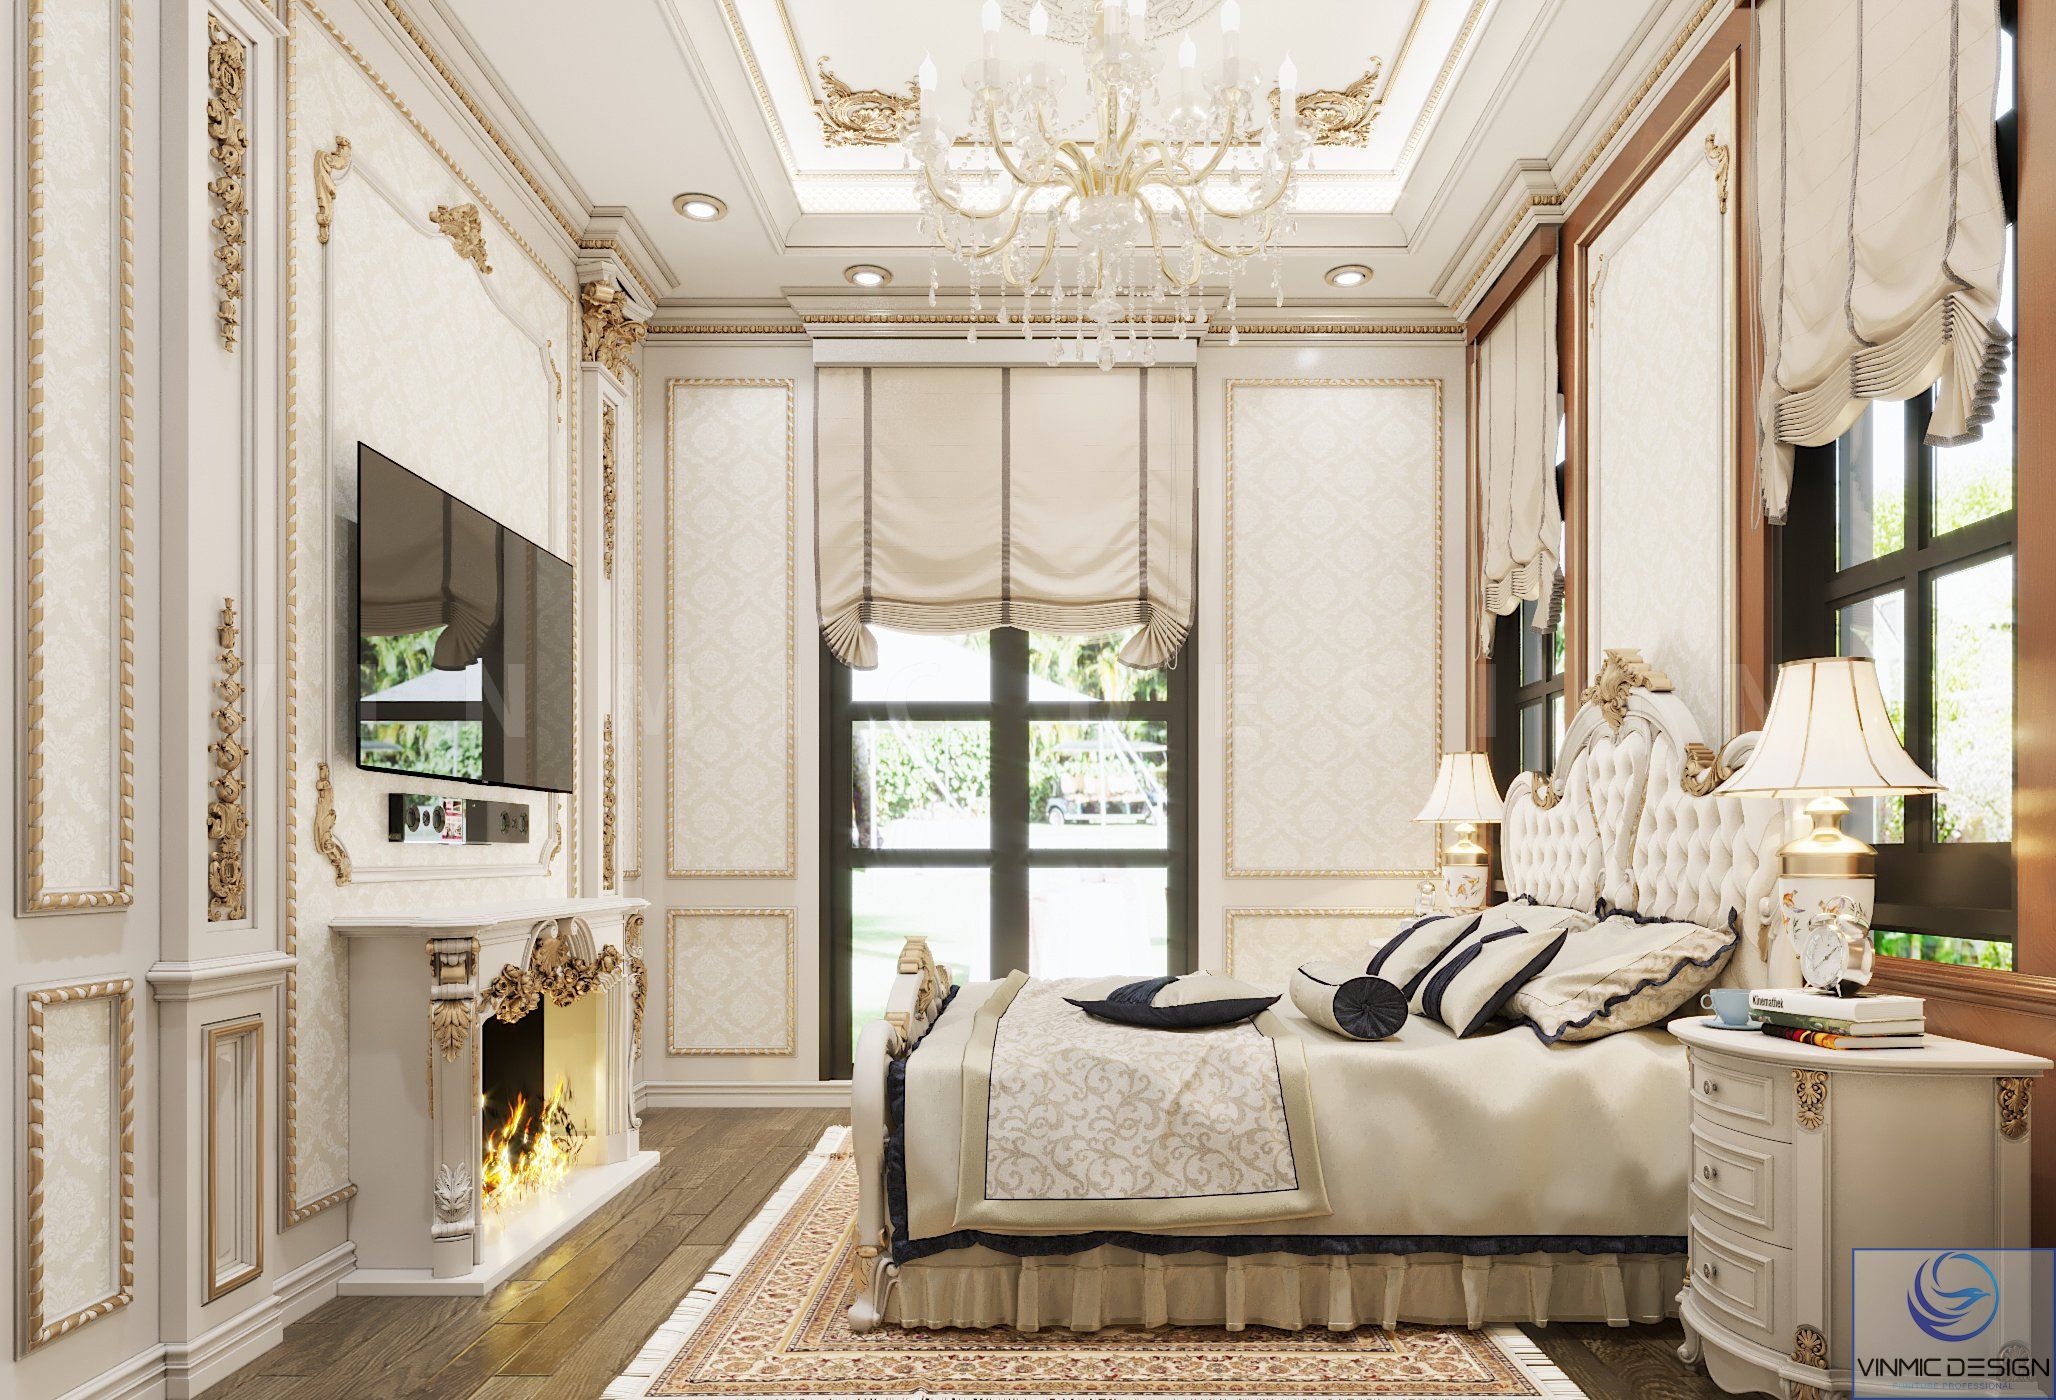 Thiết kế nội thất phòng ngủ với gam màu trắng kem nhẹ nhàng, tinh tế